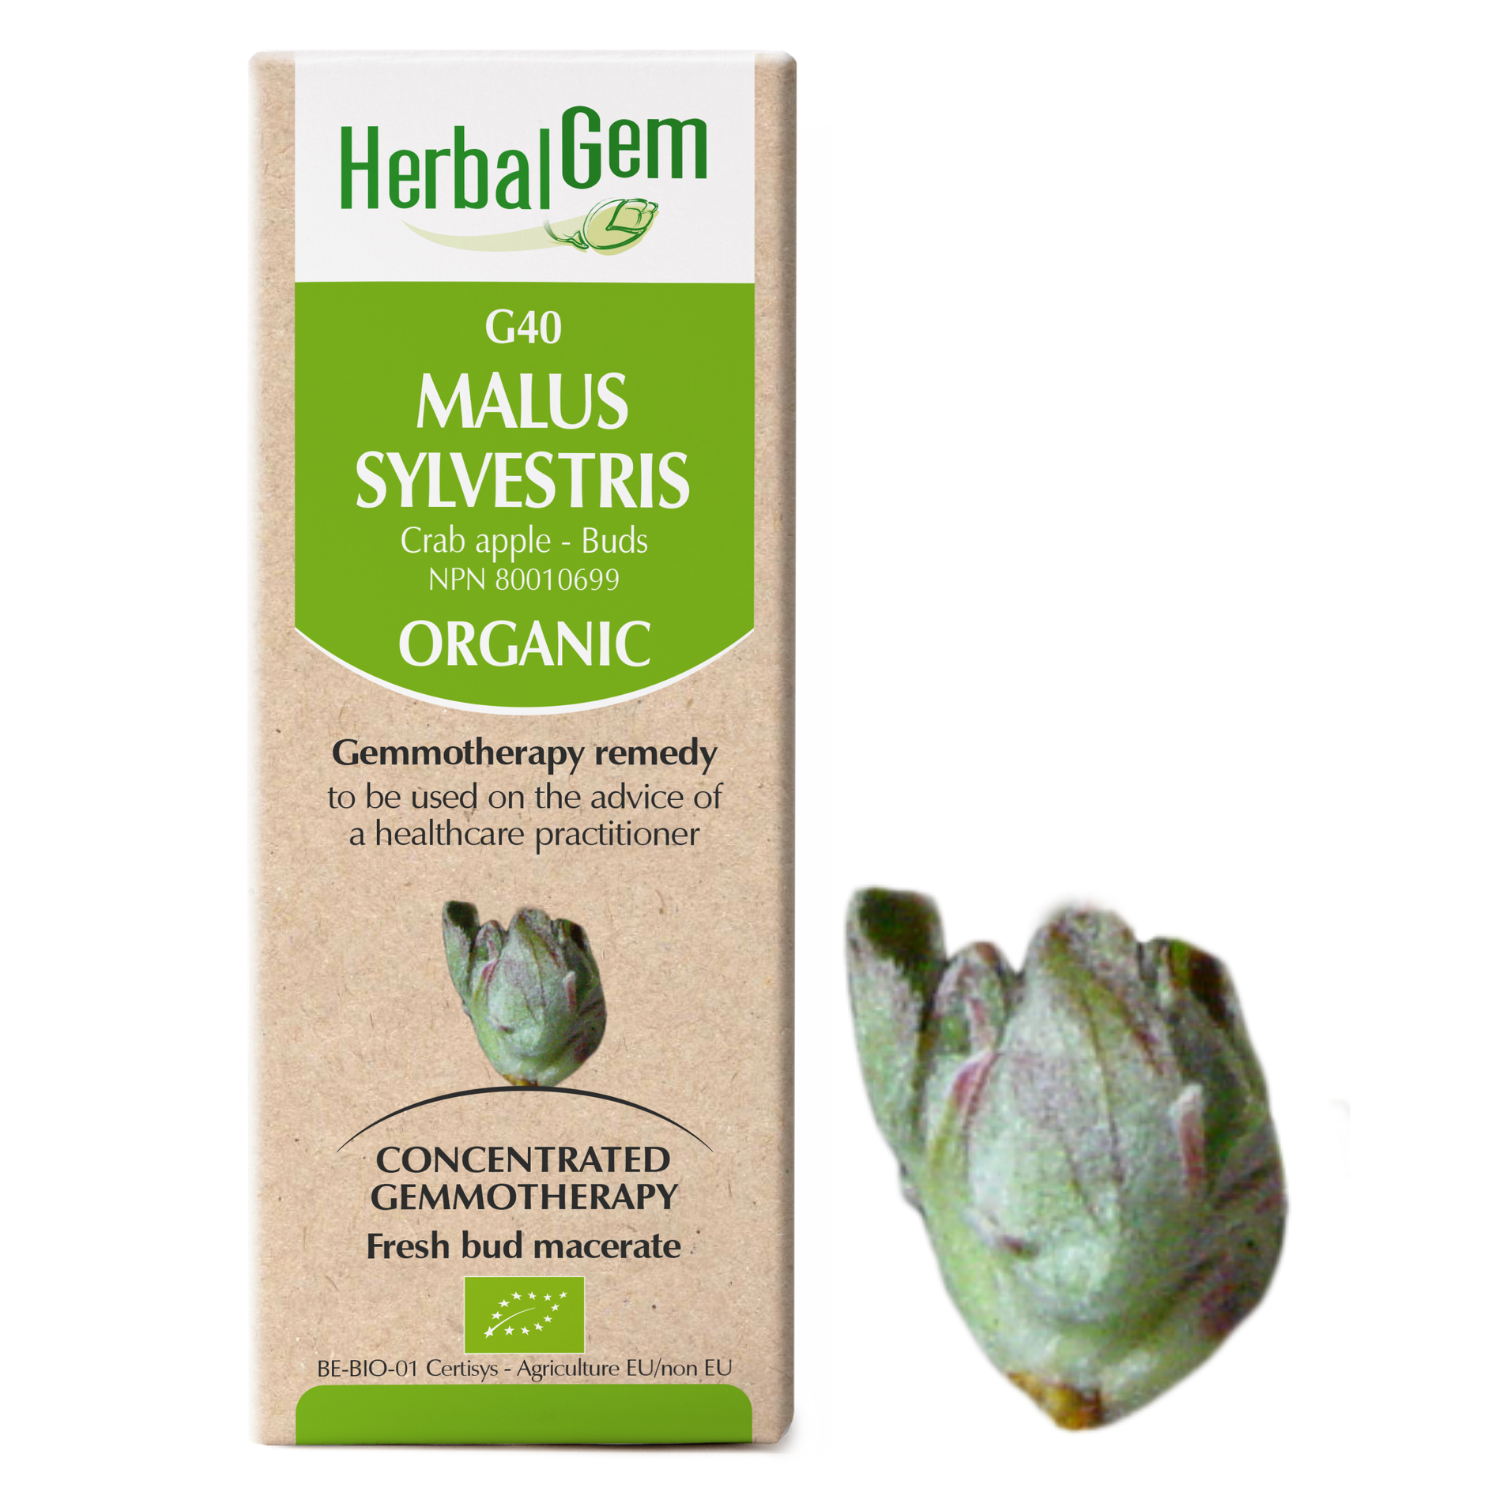 G40 Malus sylvestris, Gemmotherapy, Organic